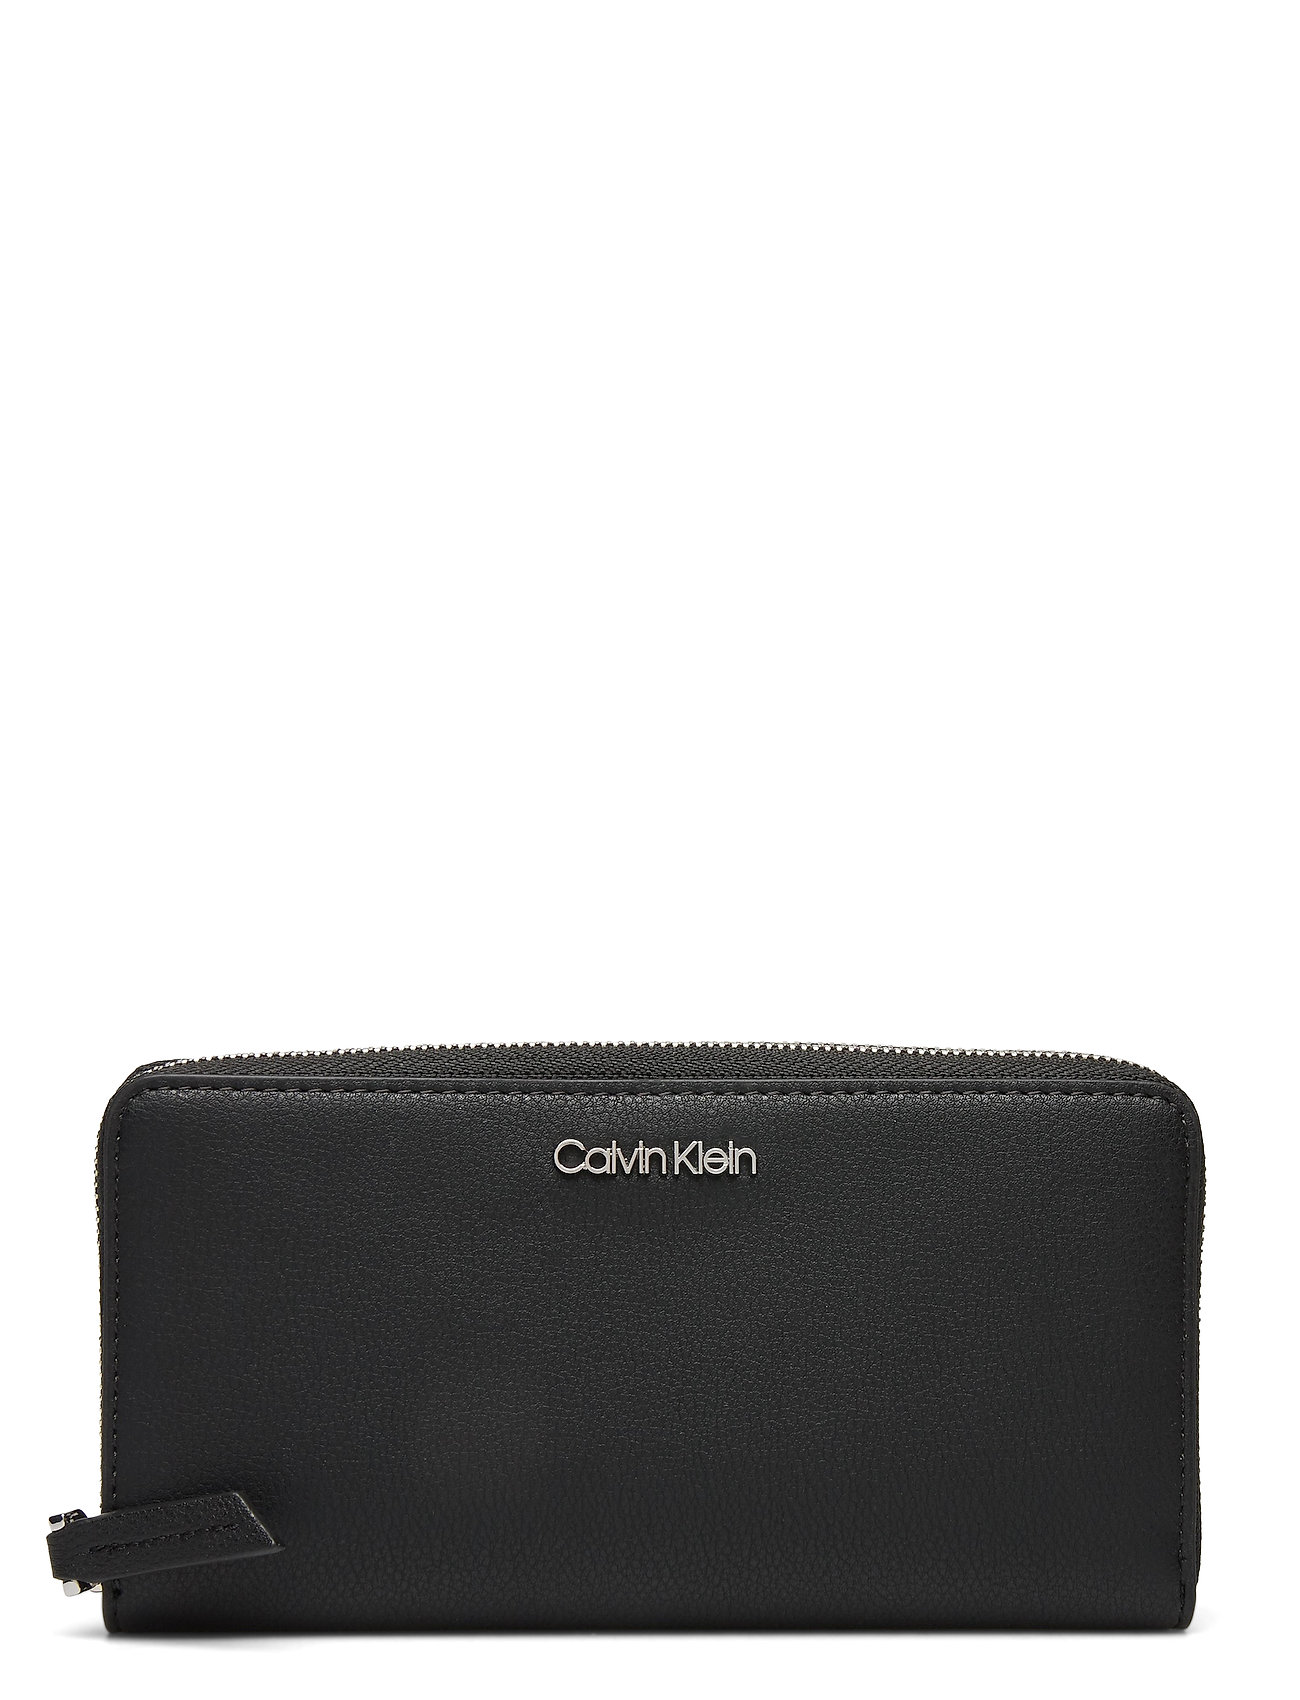 CALVIN KLEIN Must Z/A Wallet LG Epi Mono Πορτοφόλι Γυναικείο Κ60Κ610656